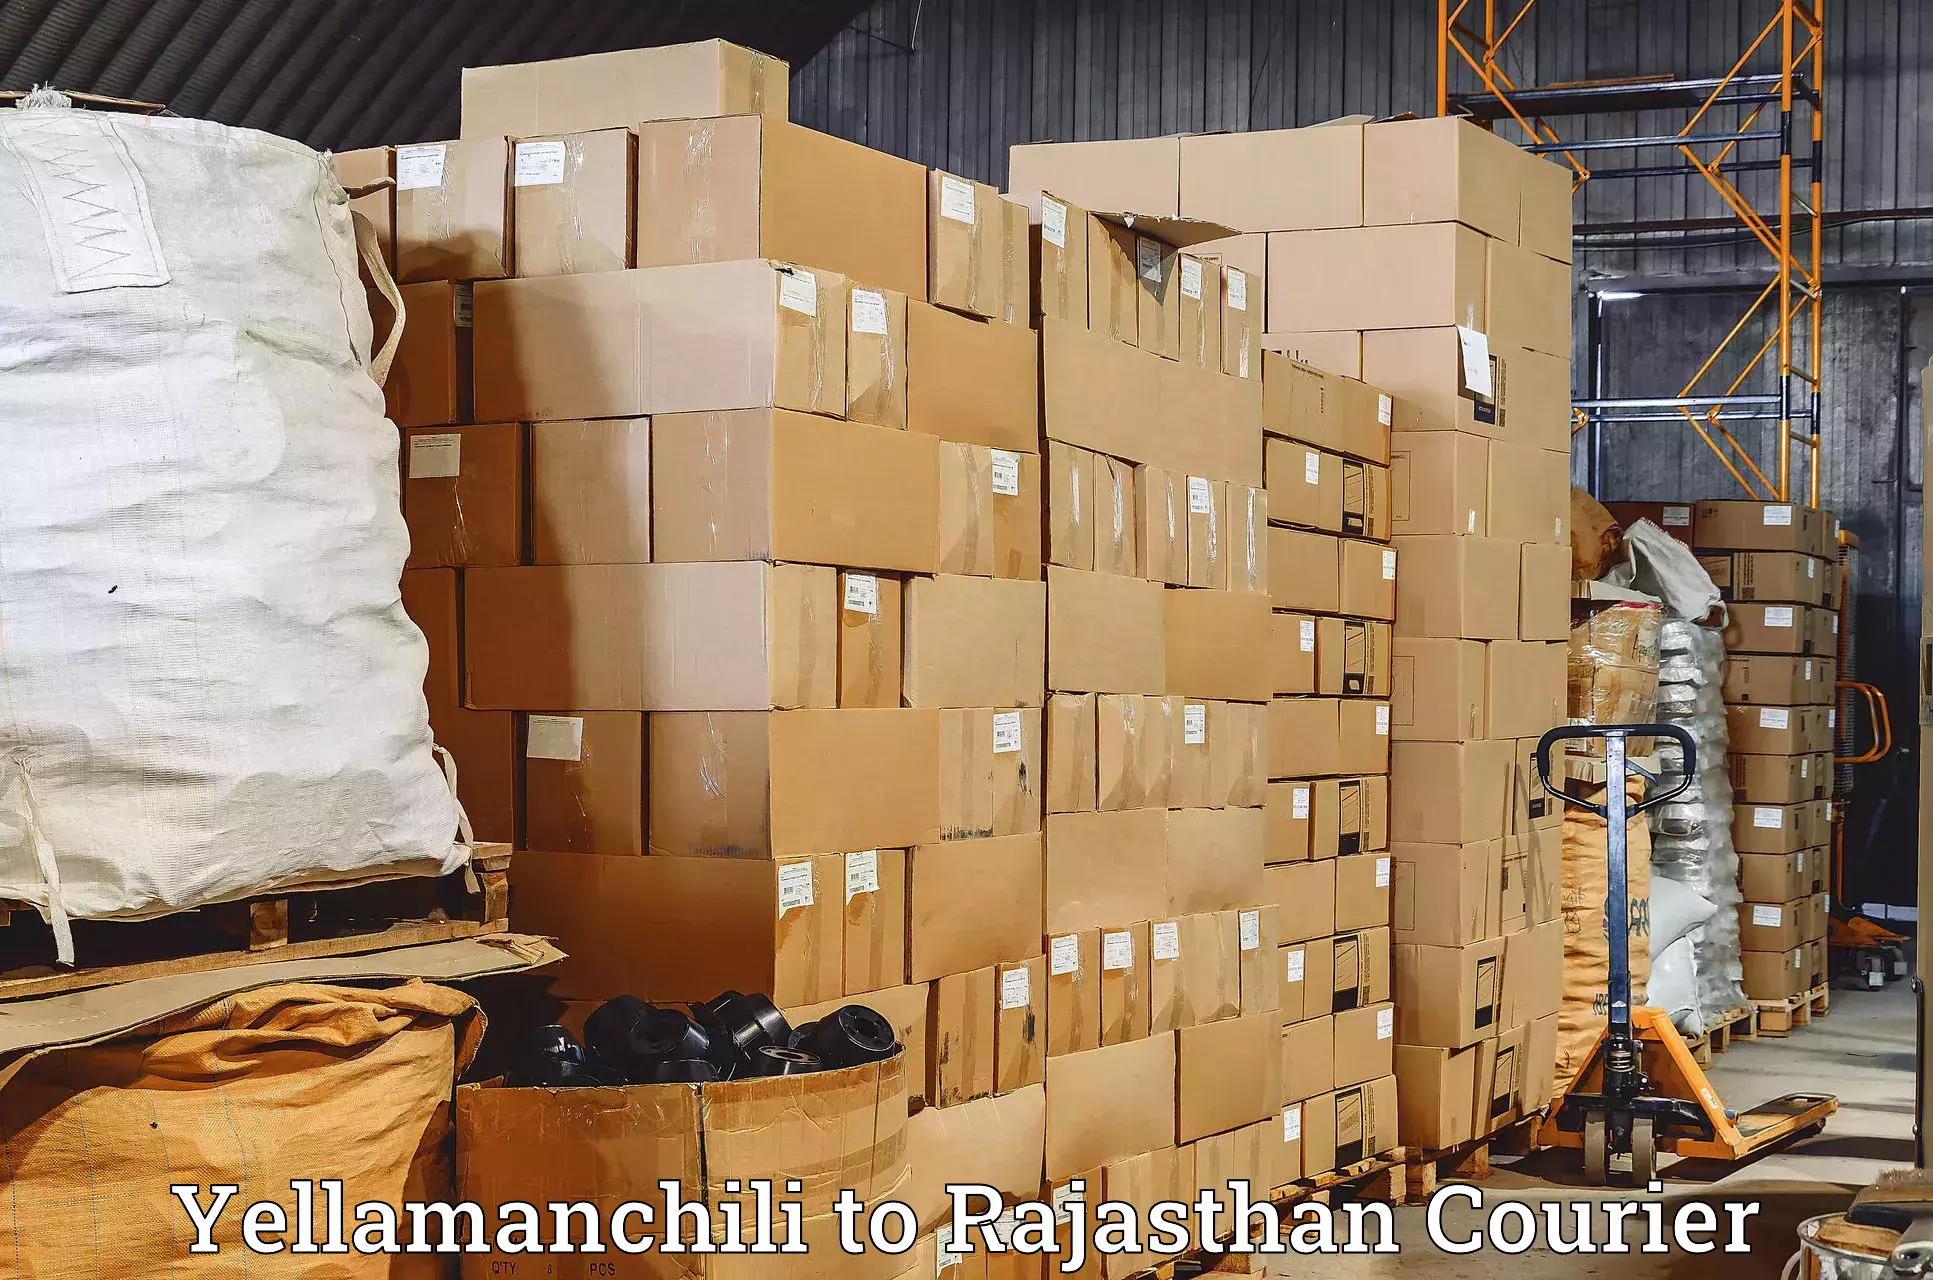 High-capacity parcel service Yellamanchili to Hindaun